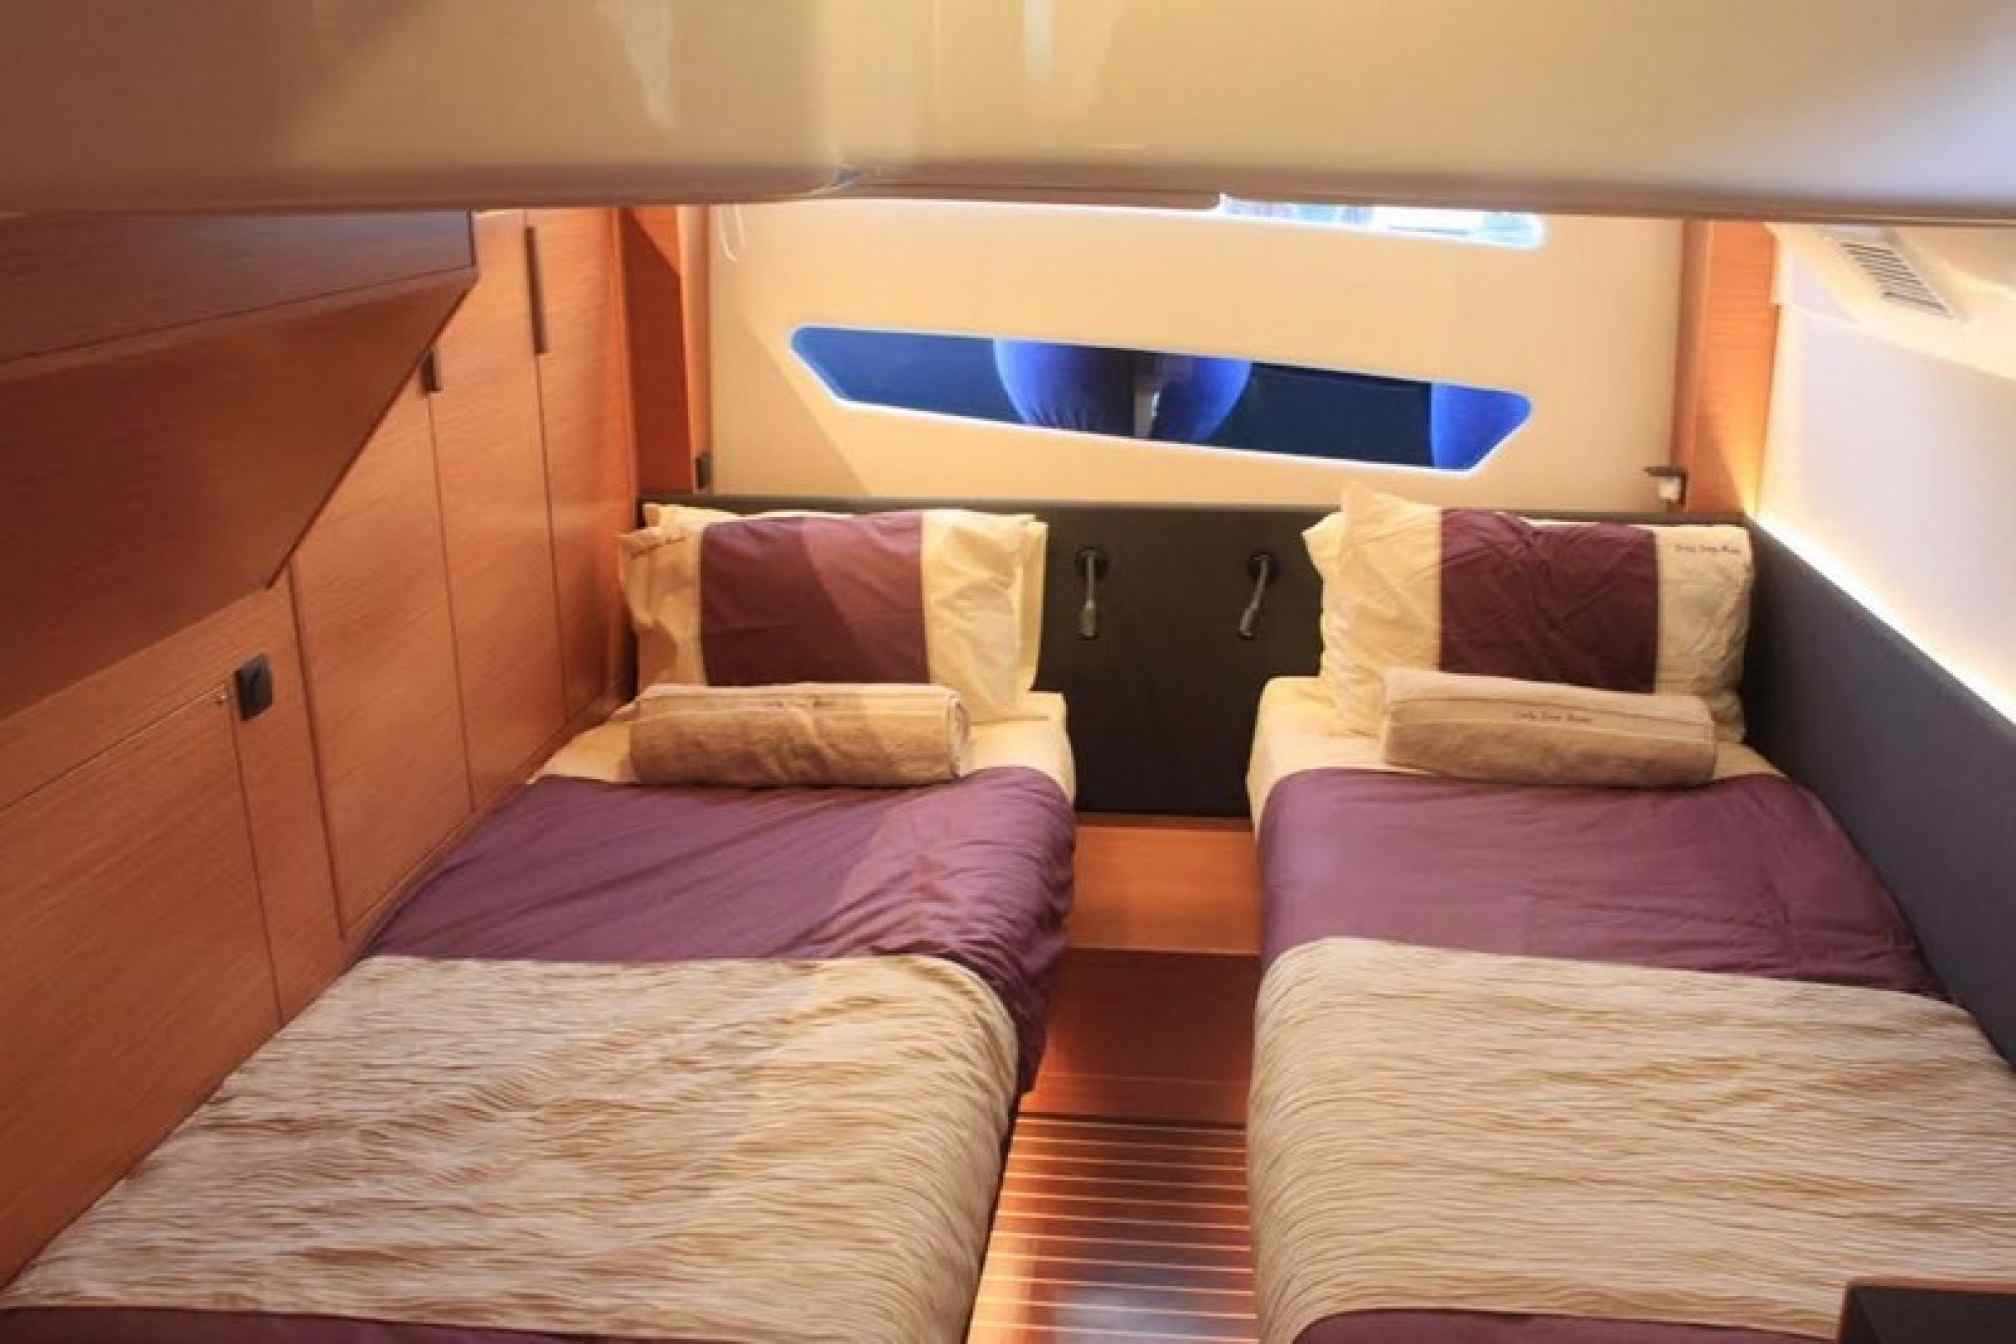  Bavaria 450 yacht charter cabin